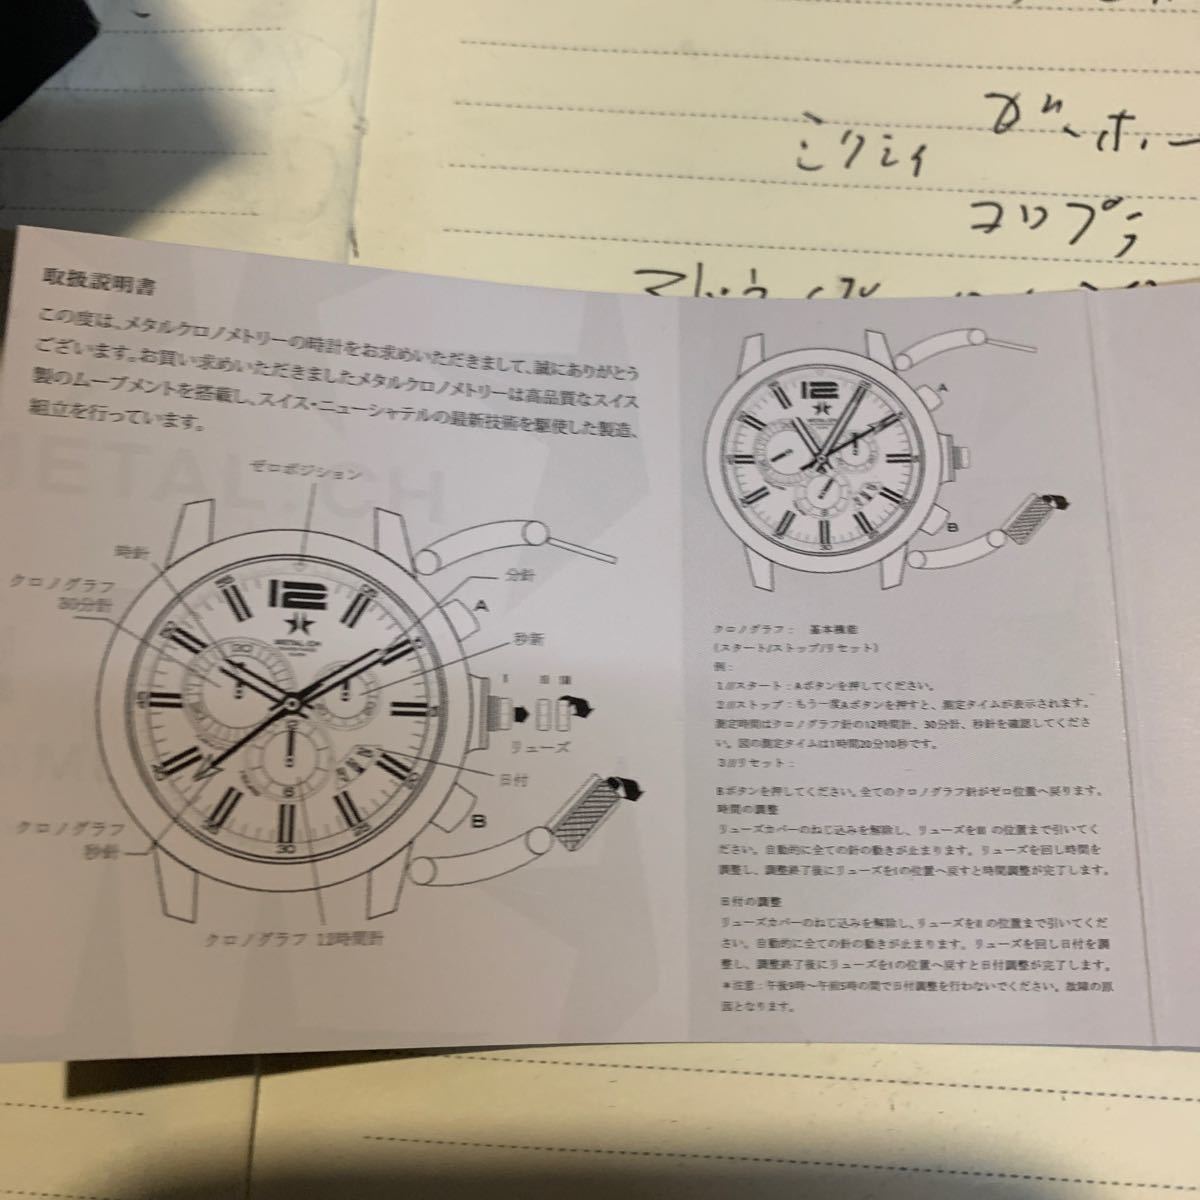 メタルクロノメトリー 3310.44 腕時計 METAL.CH 105000円